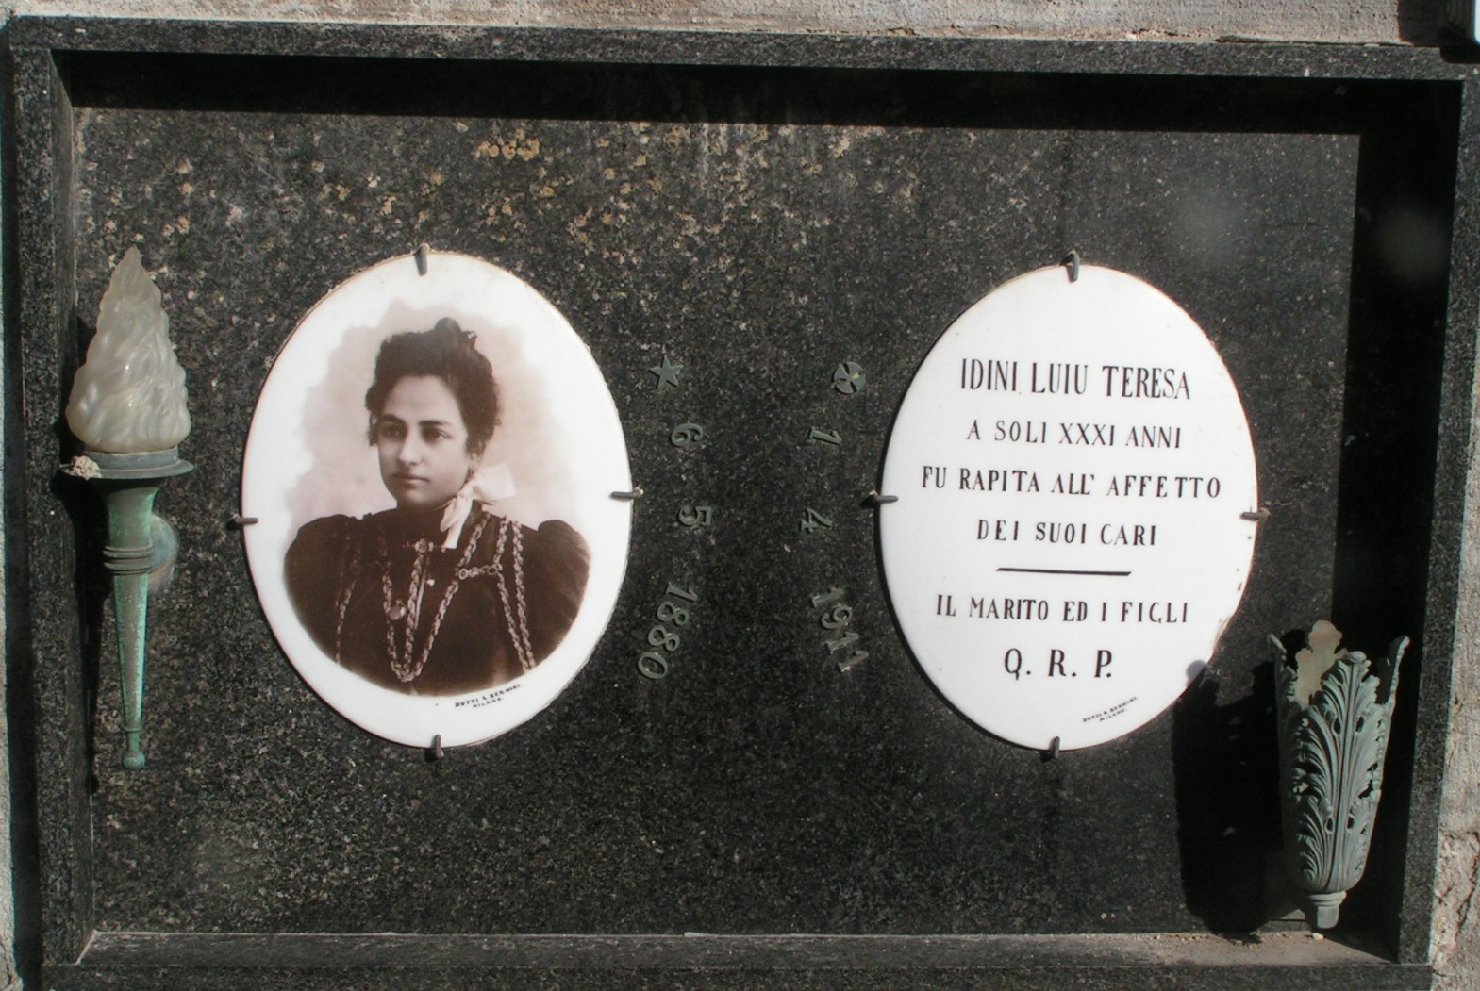 sepoltura di Teresa Idini Luiu (lapide tombale) di Dotti & Bernini (Premiato stabilimento fototecnico) (sec. XX)